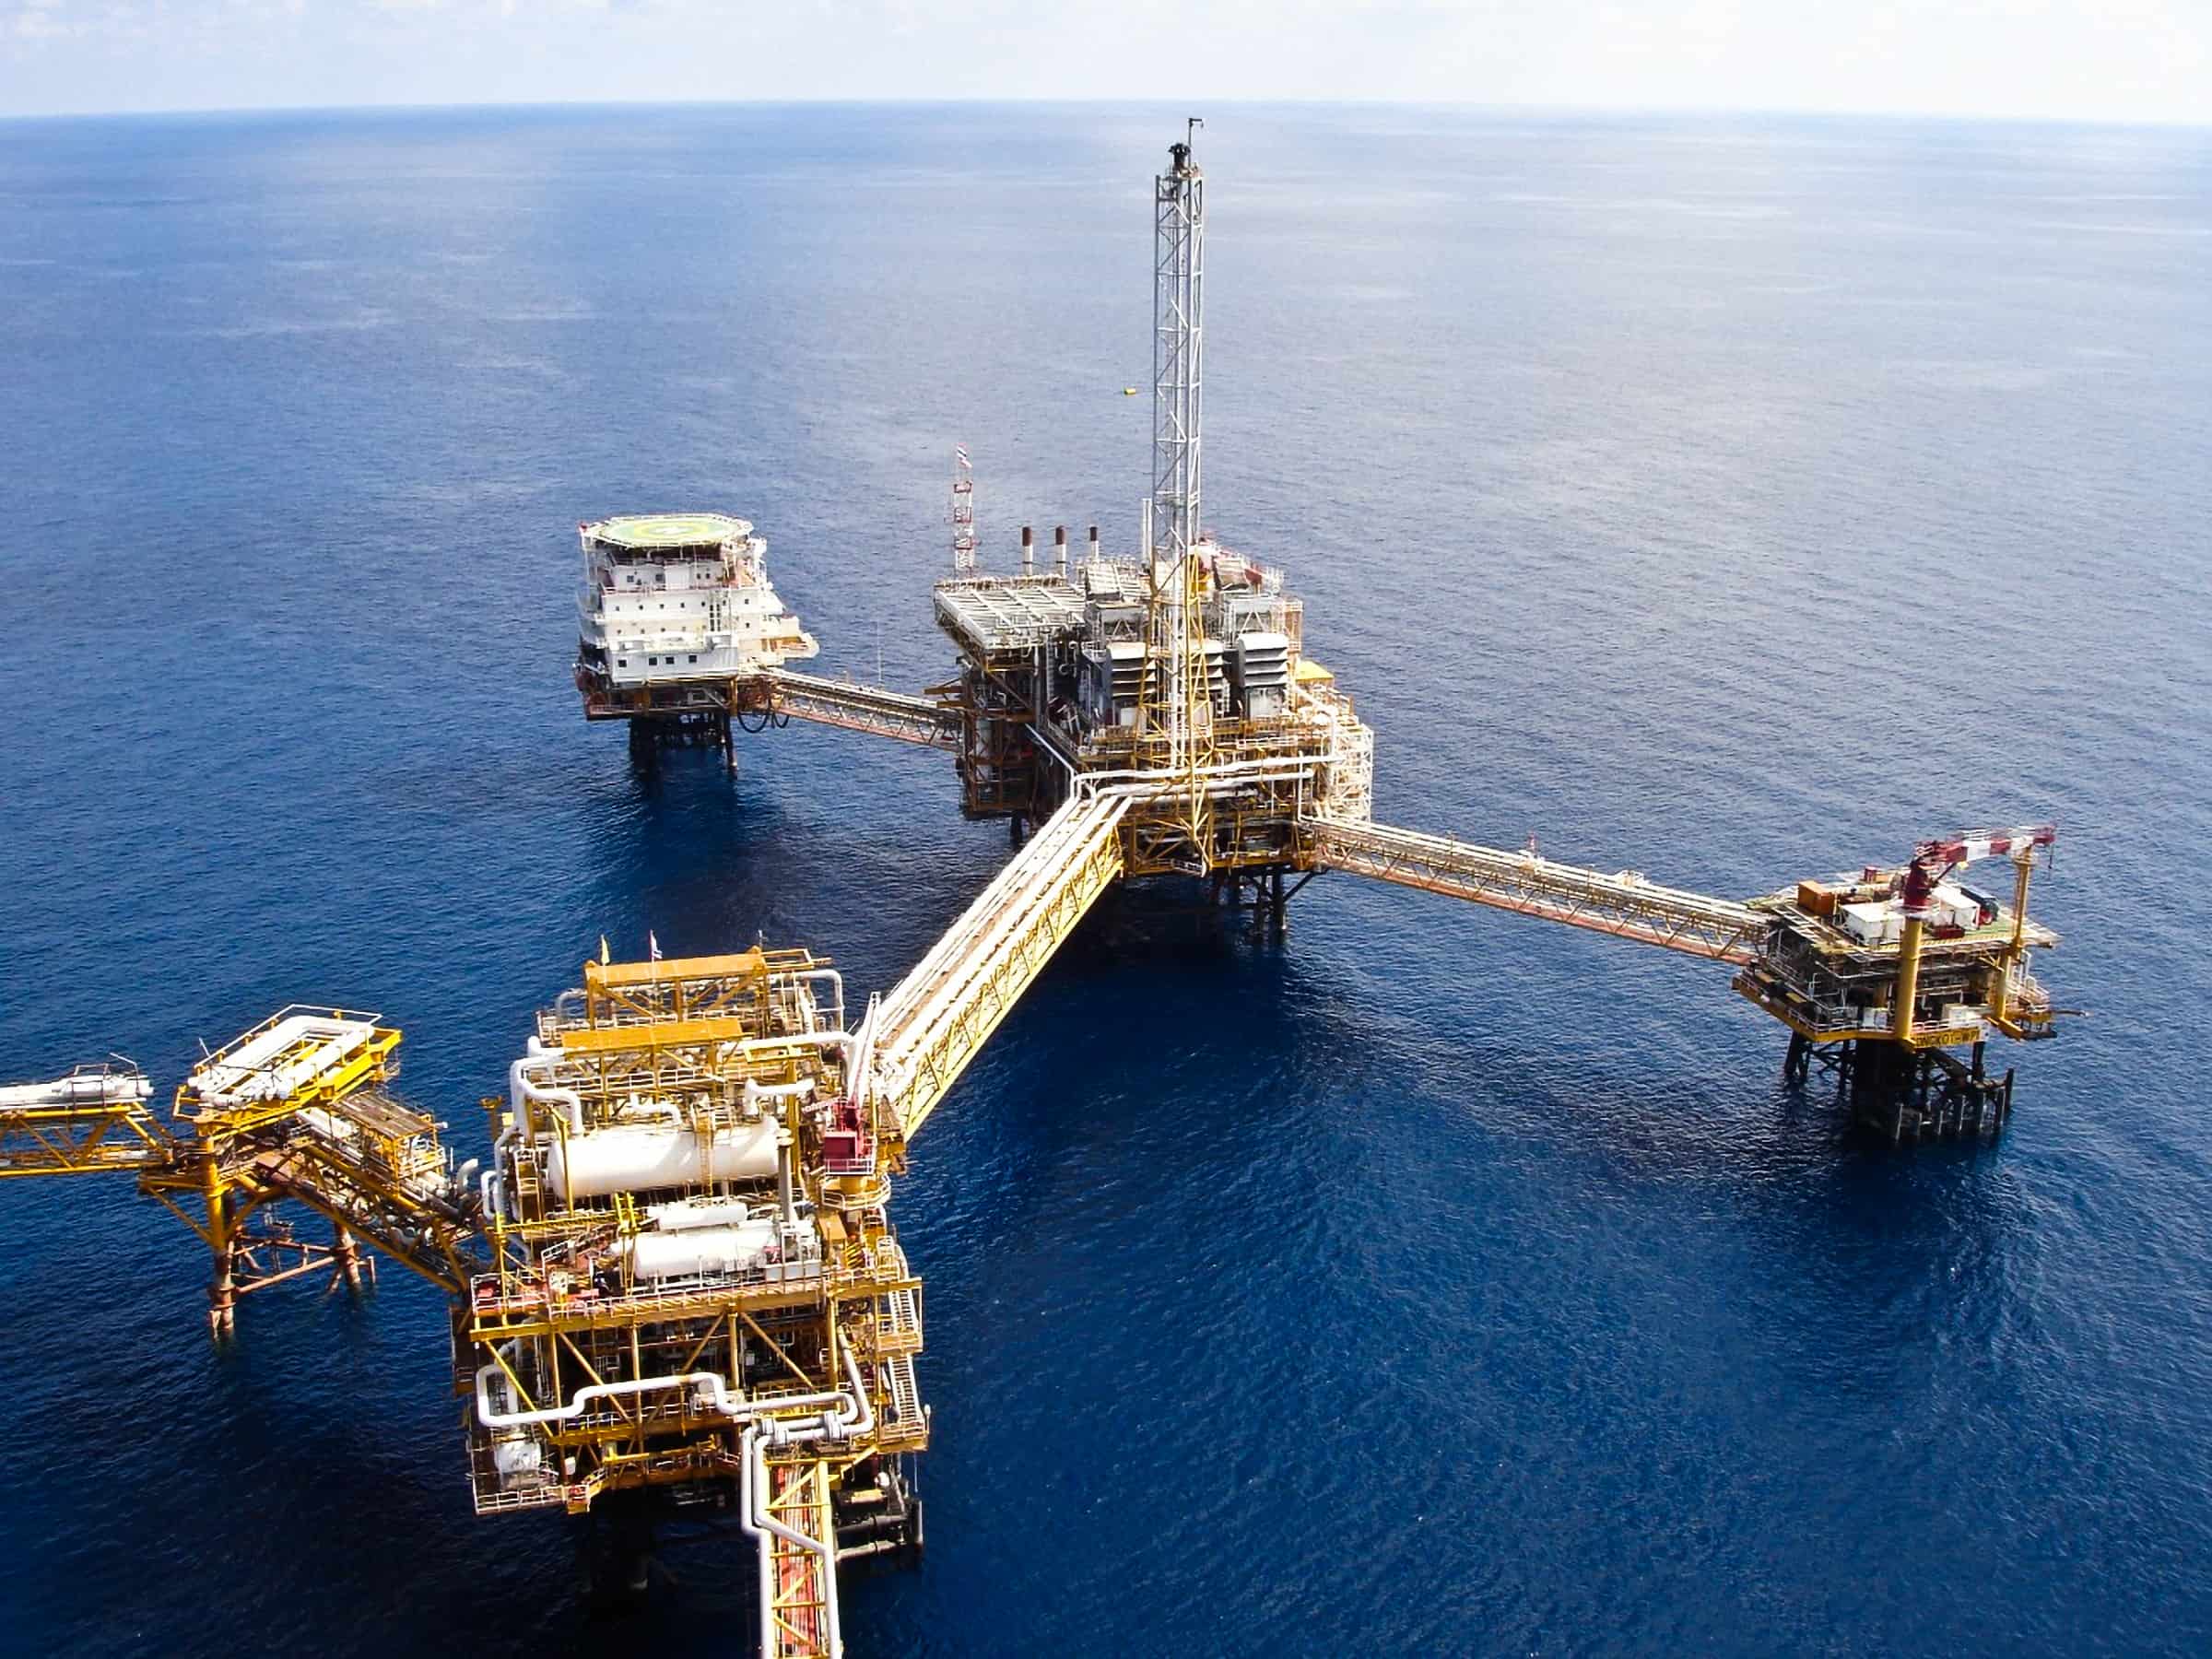 Oil rig in Pacific Ocean